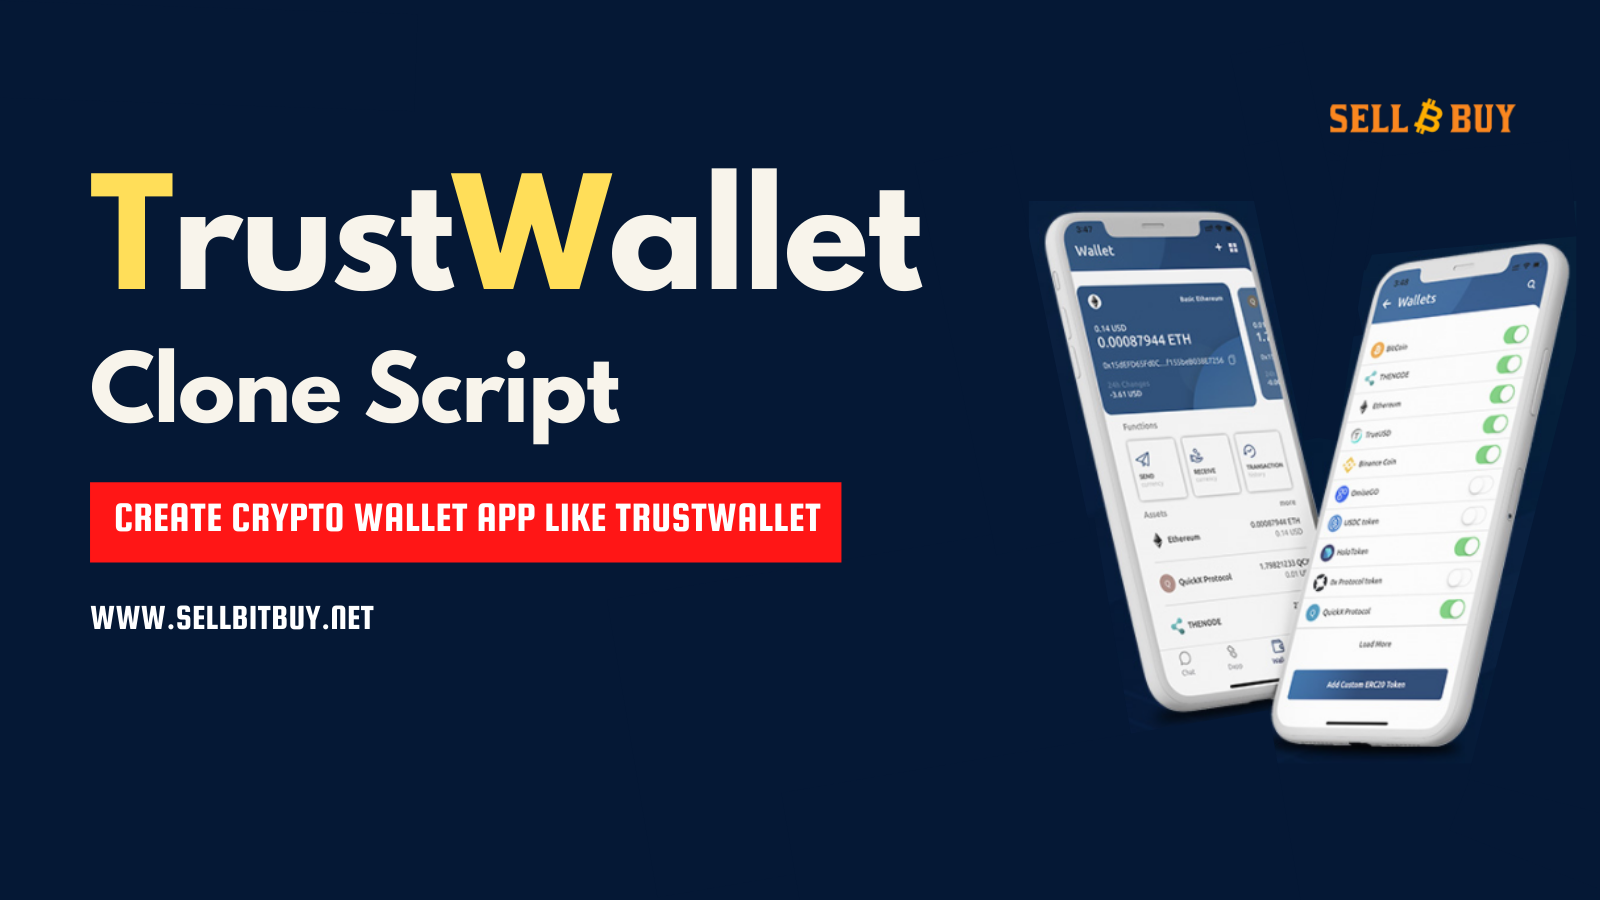 TrustWallet Clone Script - A Solution To Create Crypto Wallet App Like TrustWallet